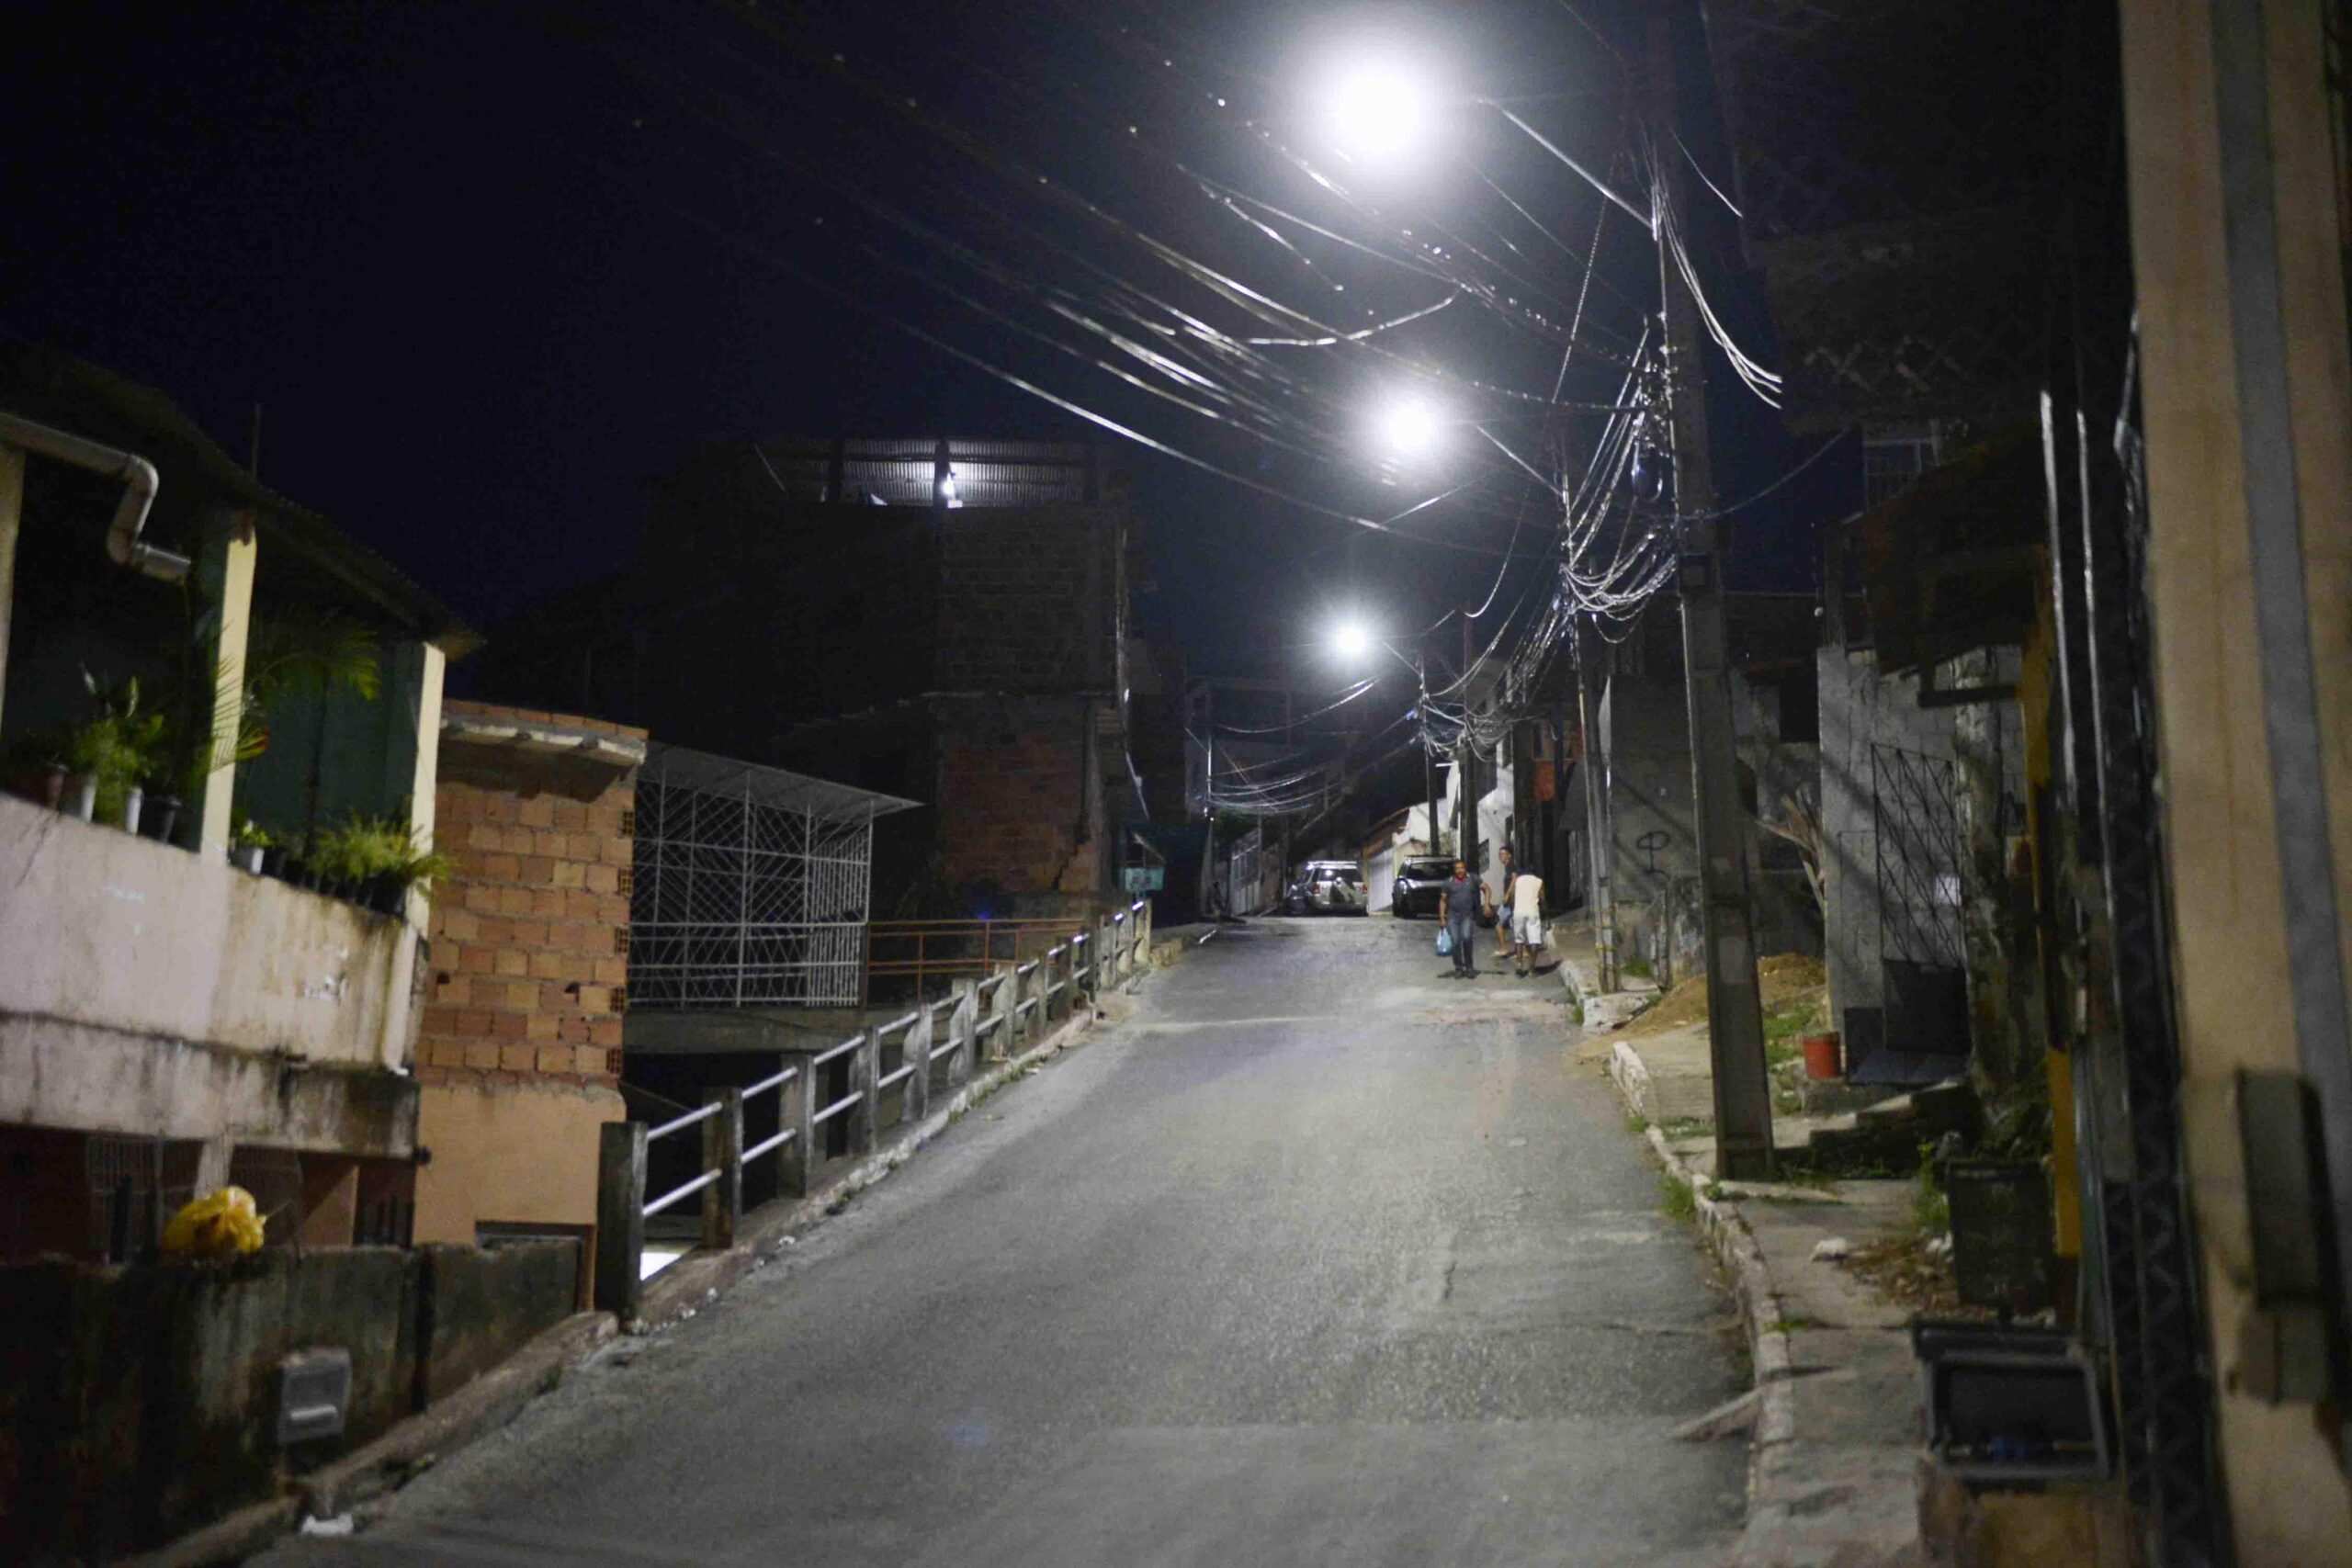 Iluminação pública em LED traz benefícios e segurança para cidadãos